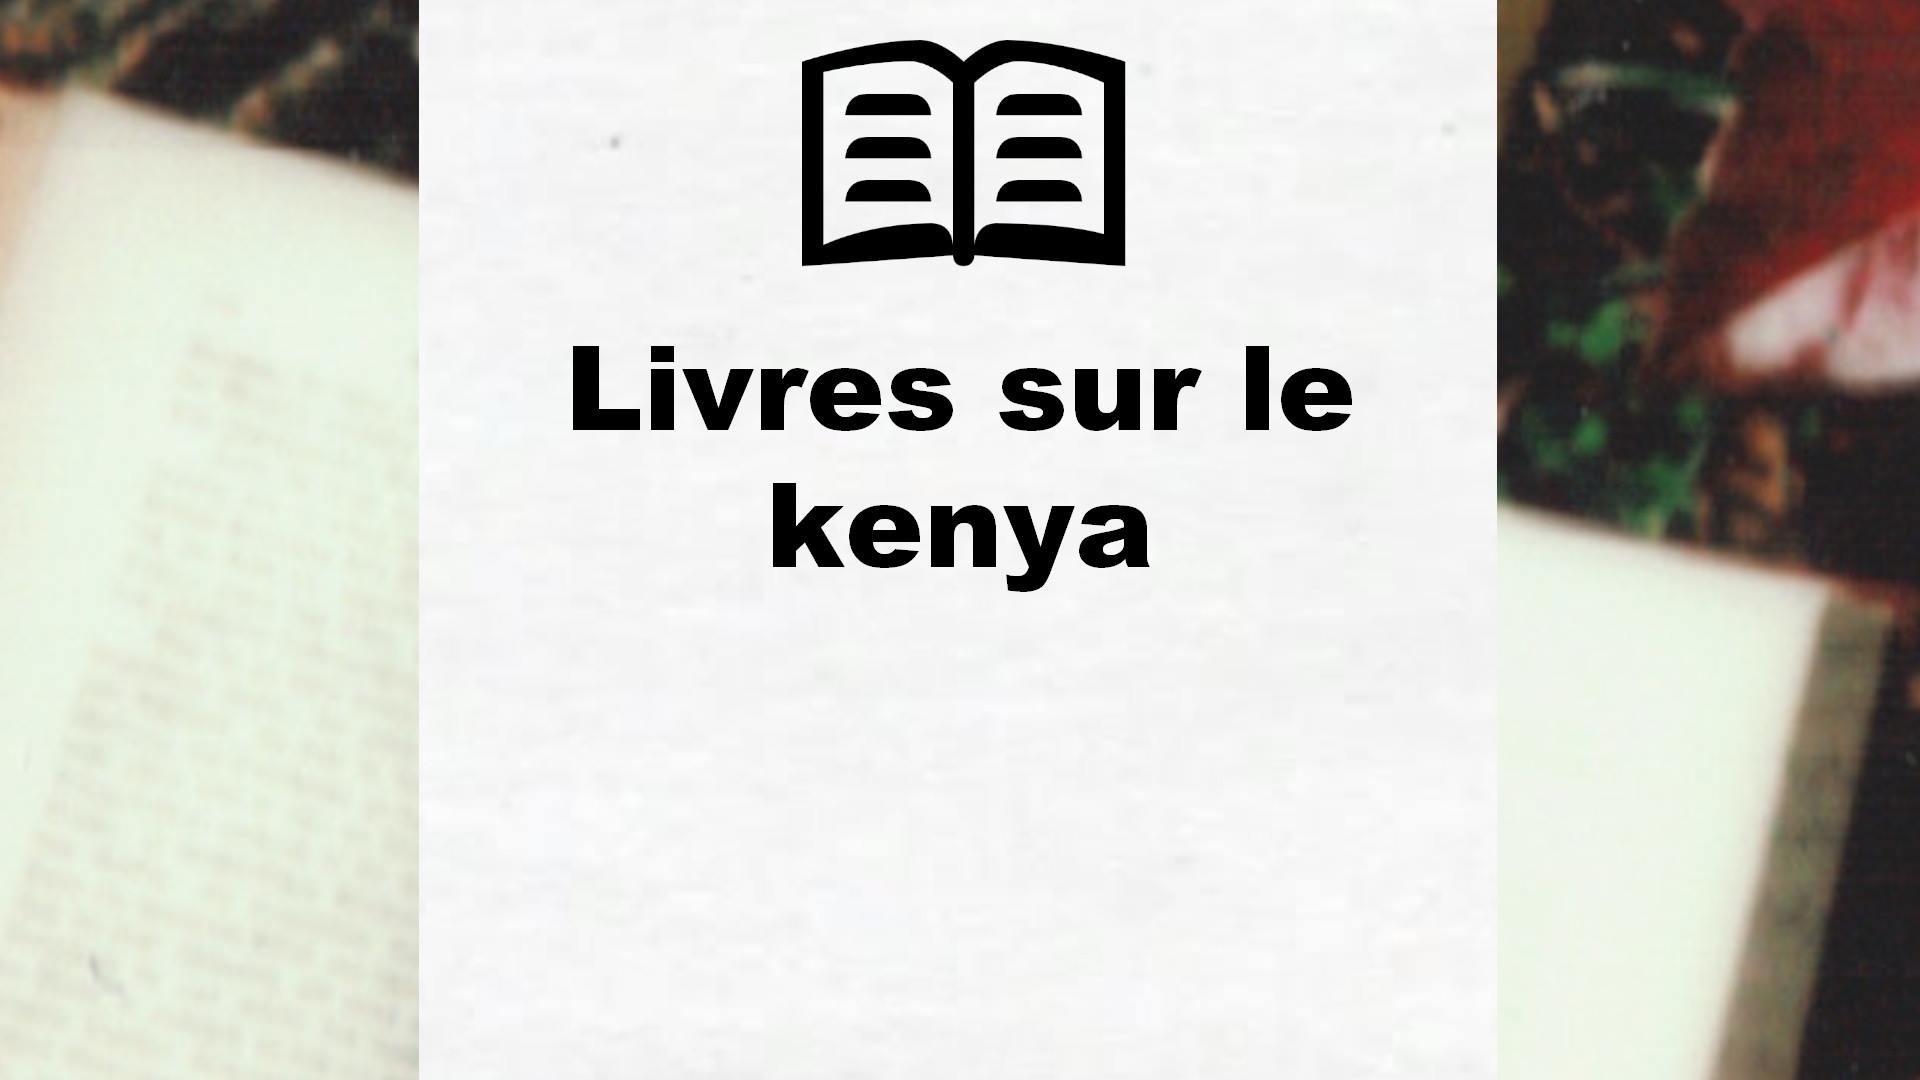 Livres sur le kenya